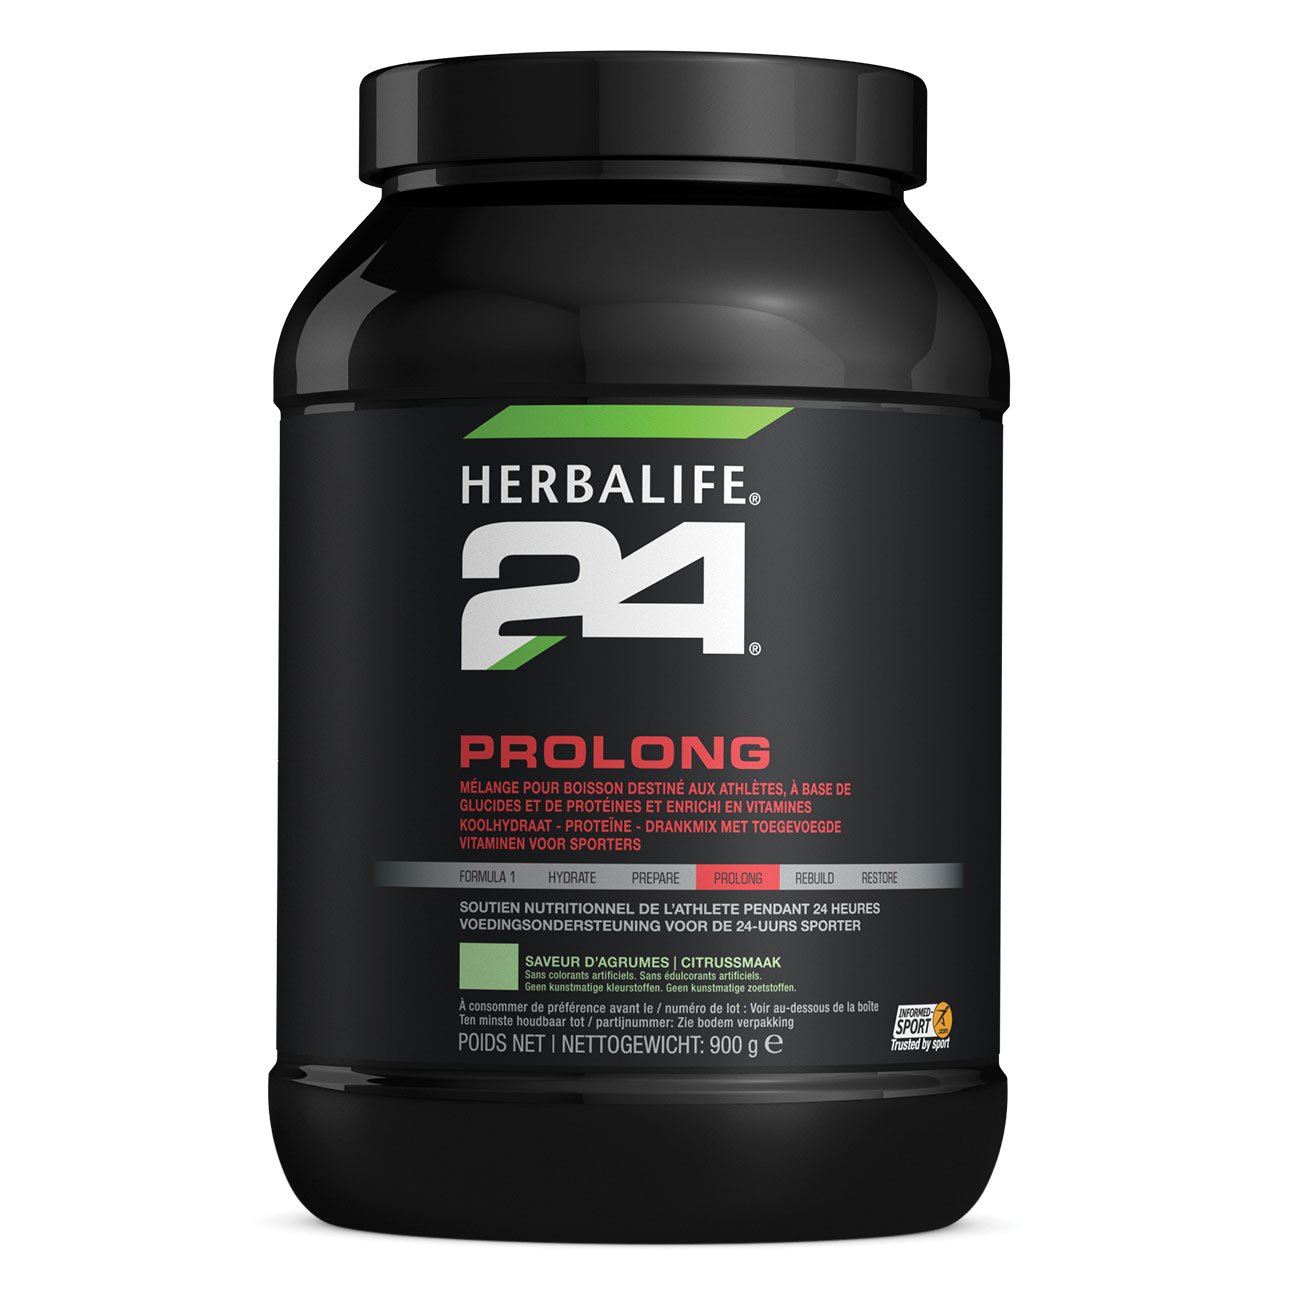 Herbalife24® Prolong Boisson à base de glucides et de protéines Agrumes product shot